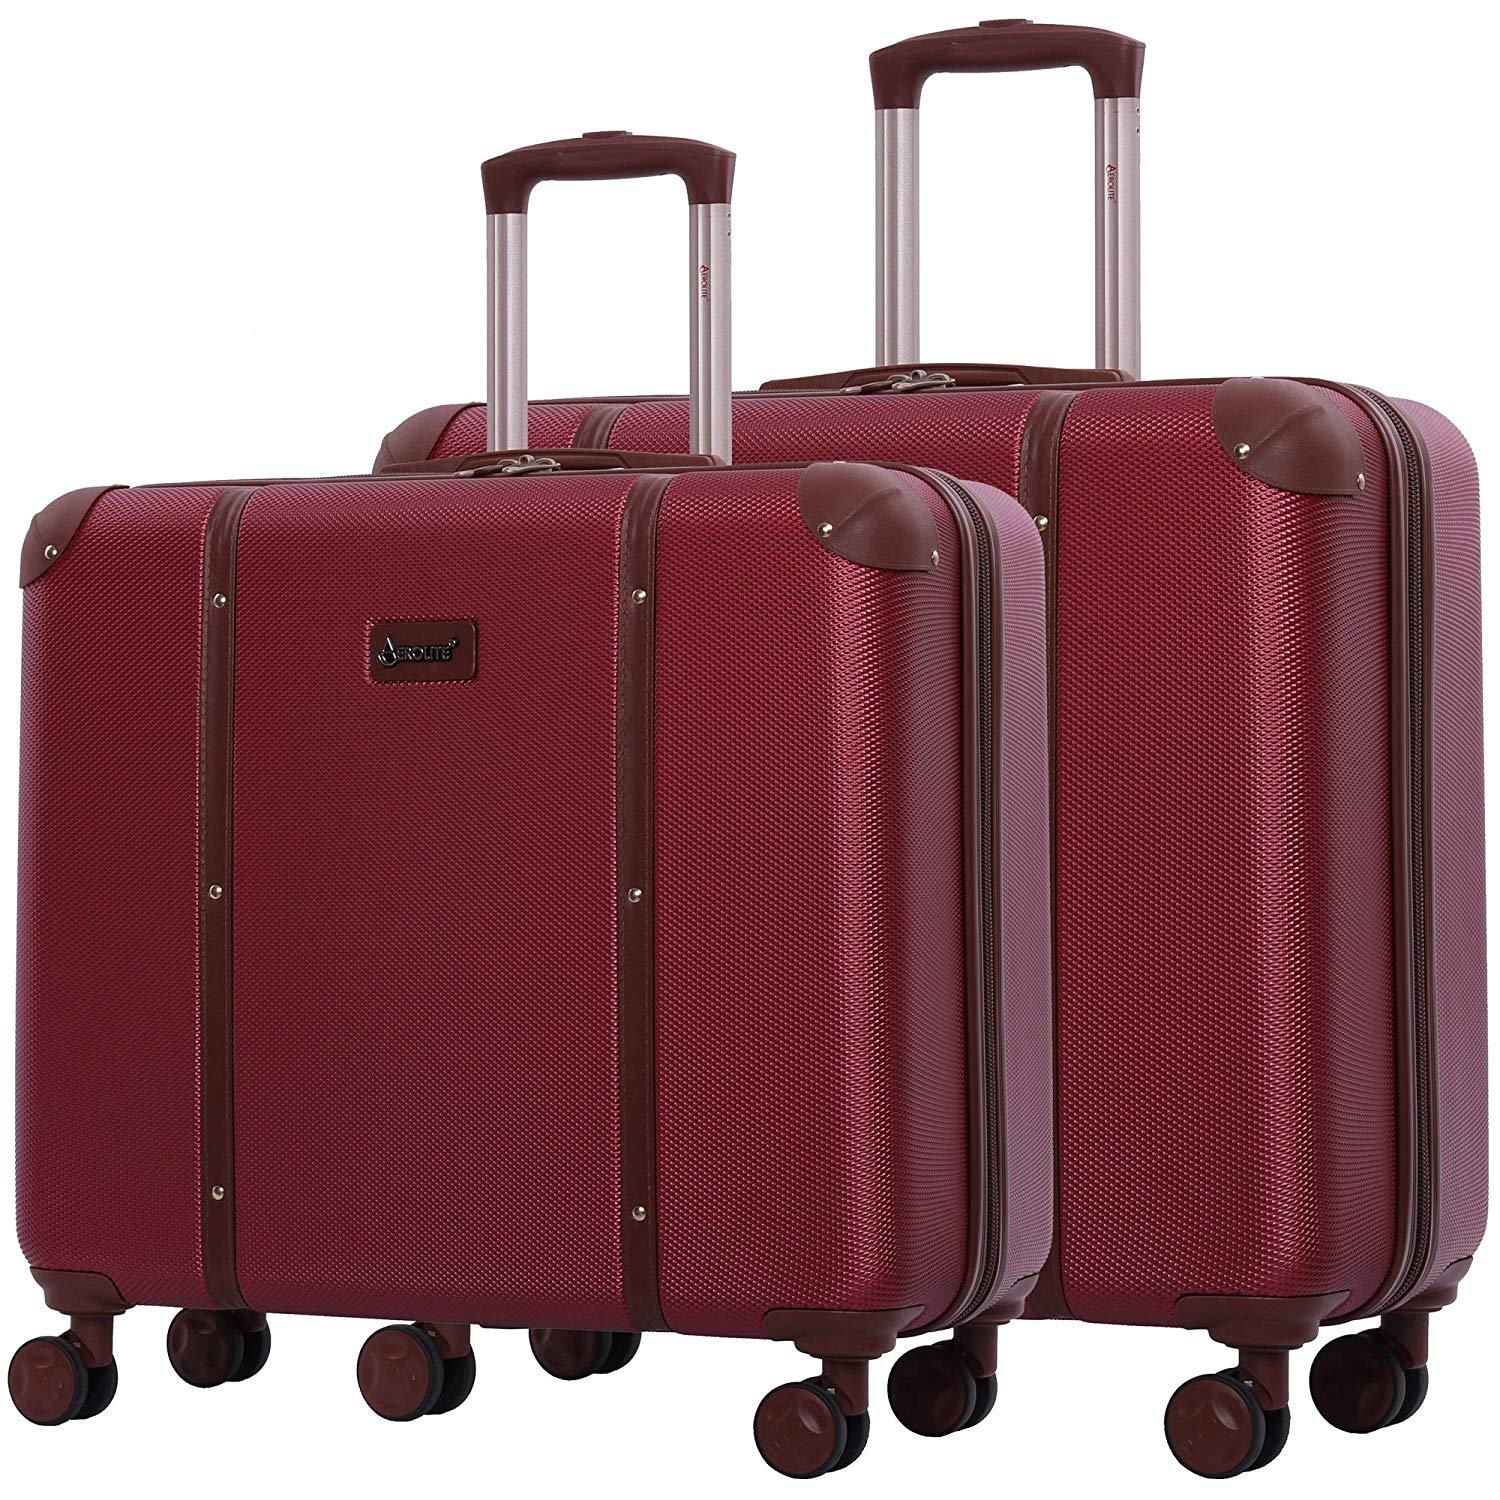 Aerolite Vintage Trunk Style Hard Shell Suitcase Luggage Set